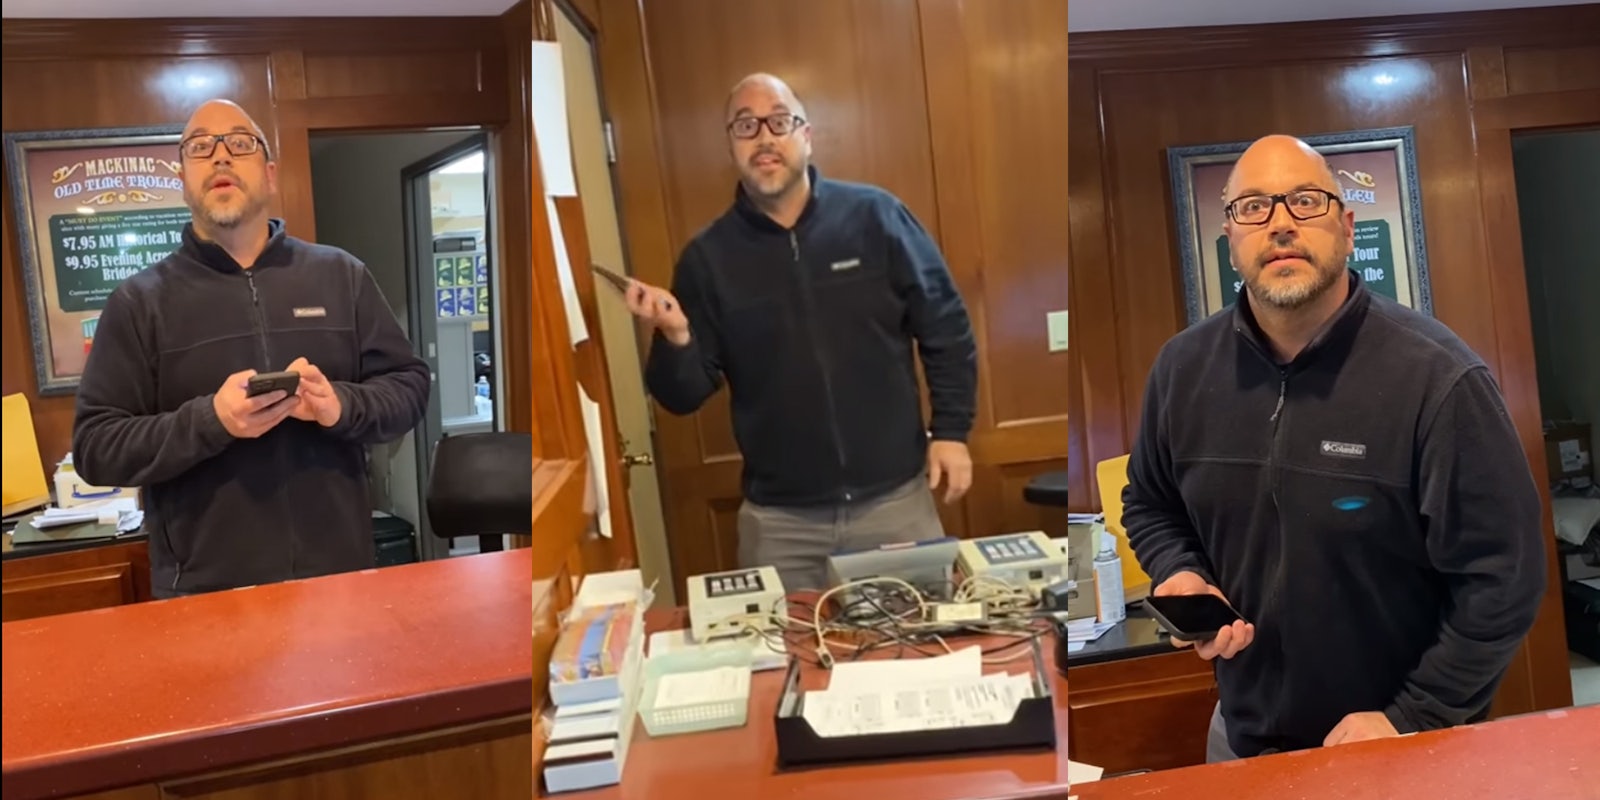 man behind desk uses phone and gestures